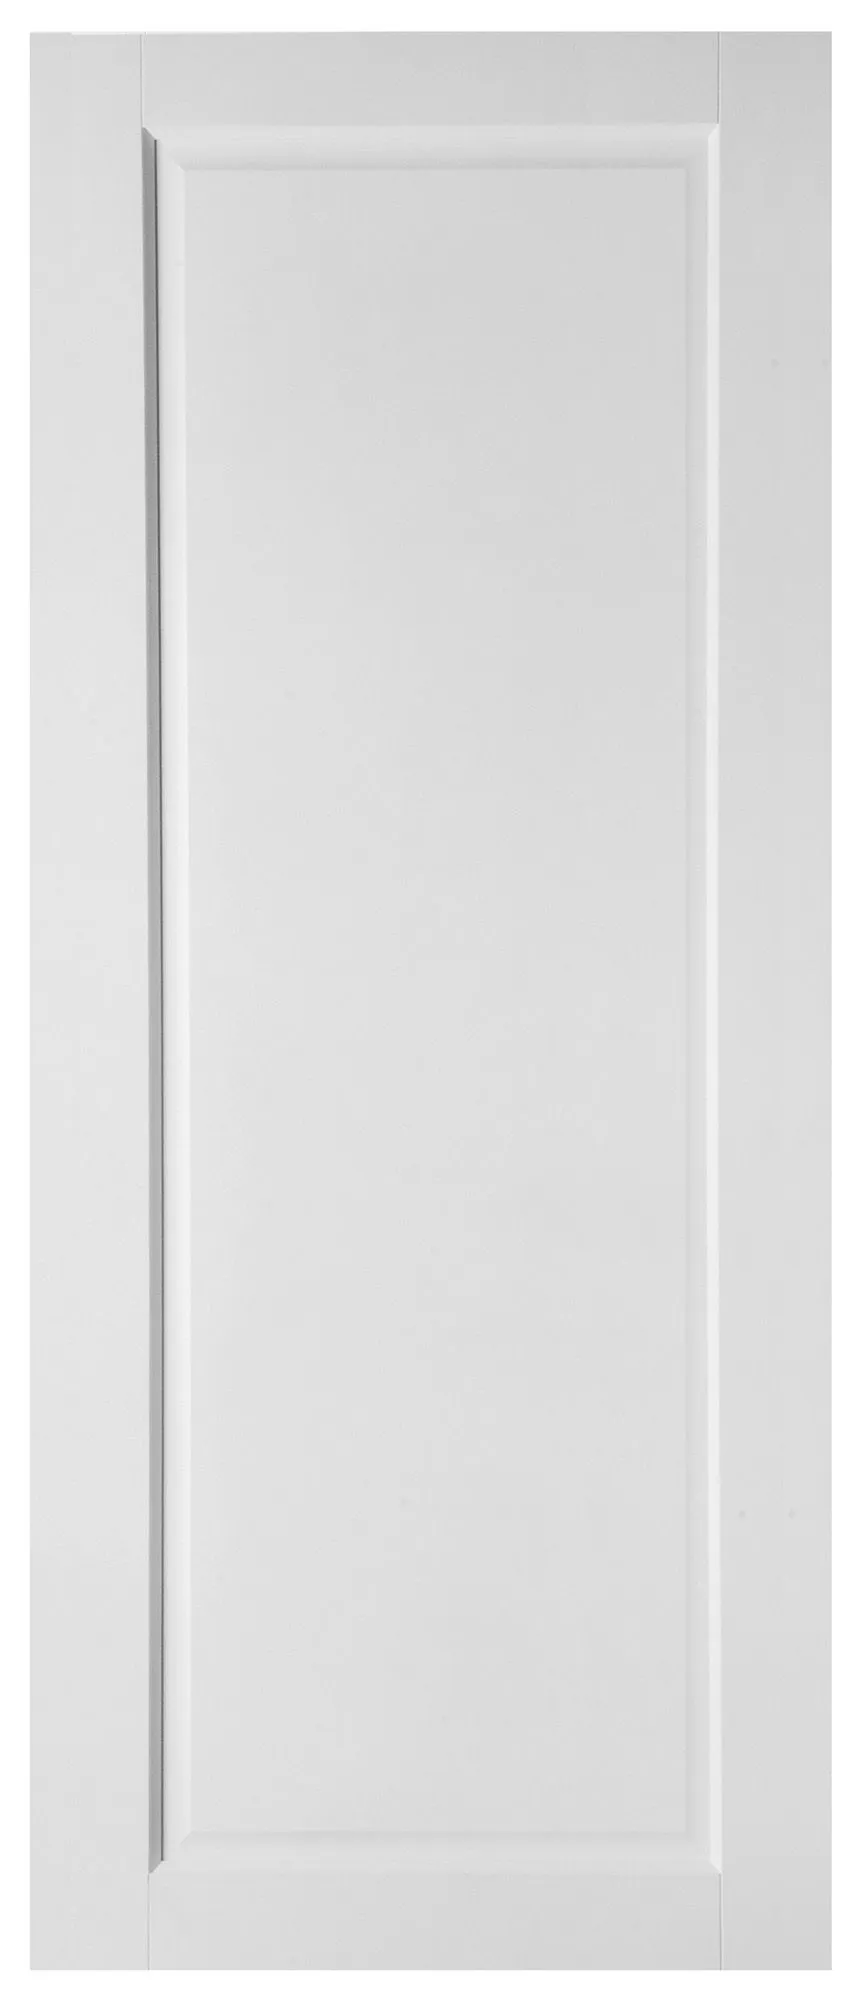 1 panel Shaker Primed White LH & RH Internal Door, (H)1981mm (W)838mm